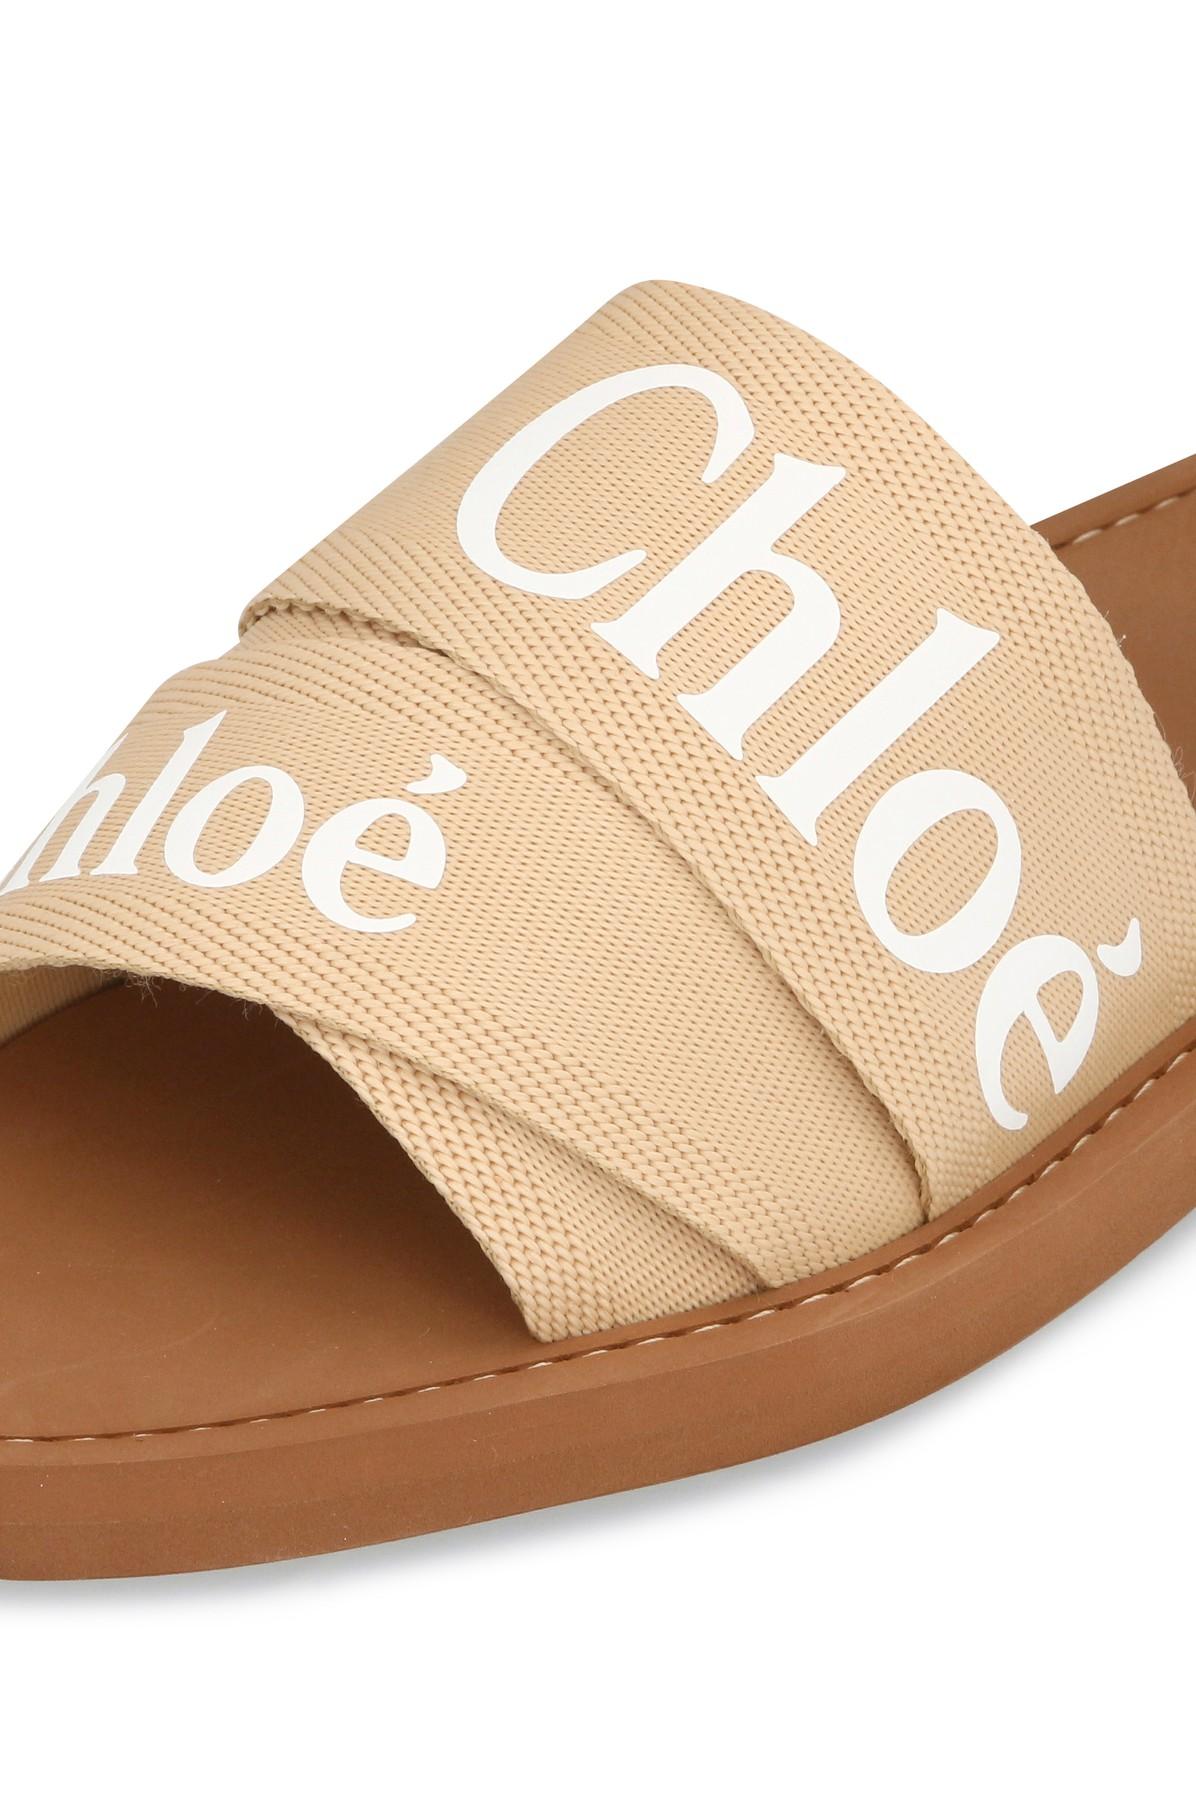 Chloé Woody Sandals | Lyst